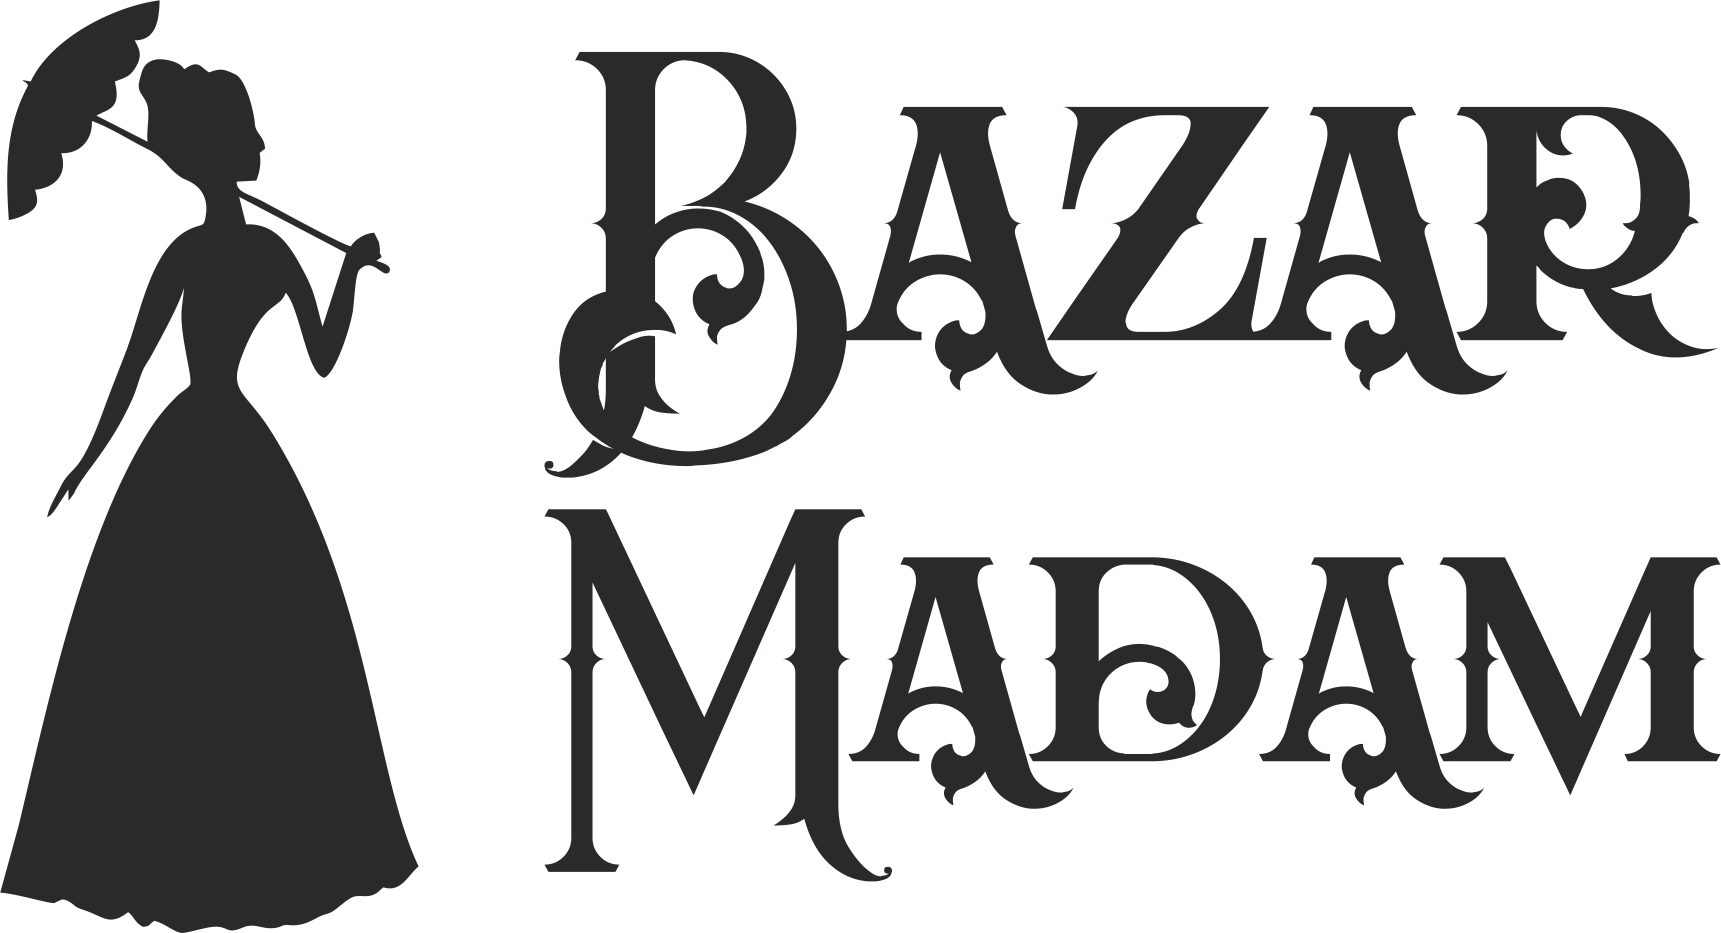 BazarMadam